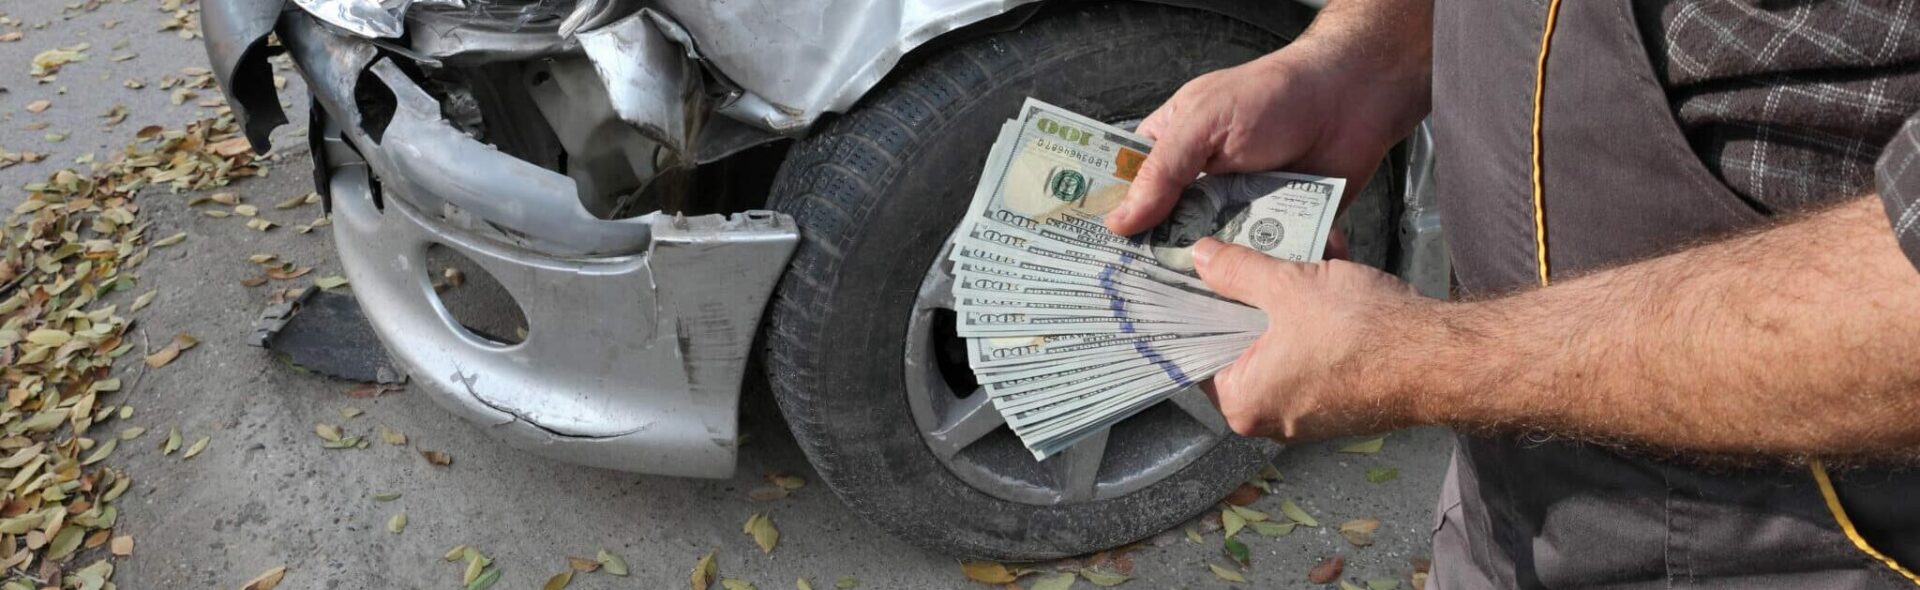 Inspection de voiture endommagée, mains masculines tenant de l'argent, billets en dollars, agent ou travailleur d'assurance, mécanicien